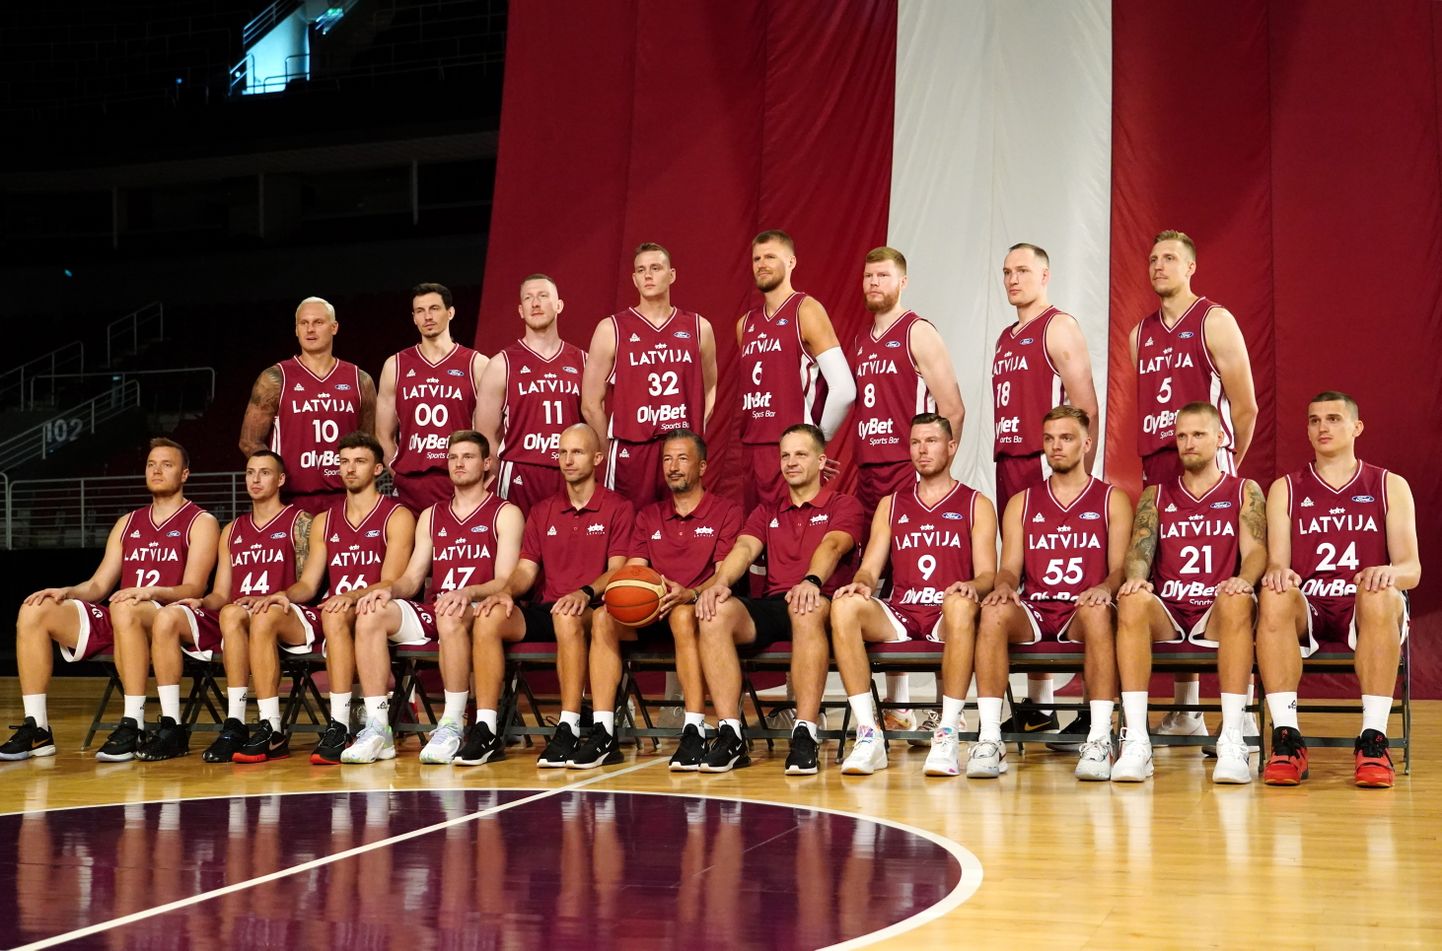 Latvijas vīriešu basketbola valstsvienība fotogrāfējas kopbildei mediju pasākuma laikā "Arēnā Rīga".